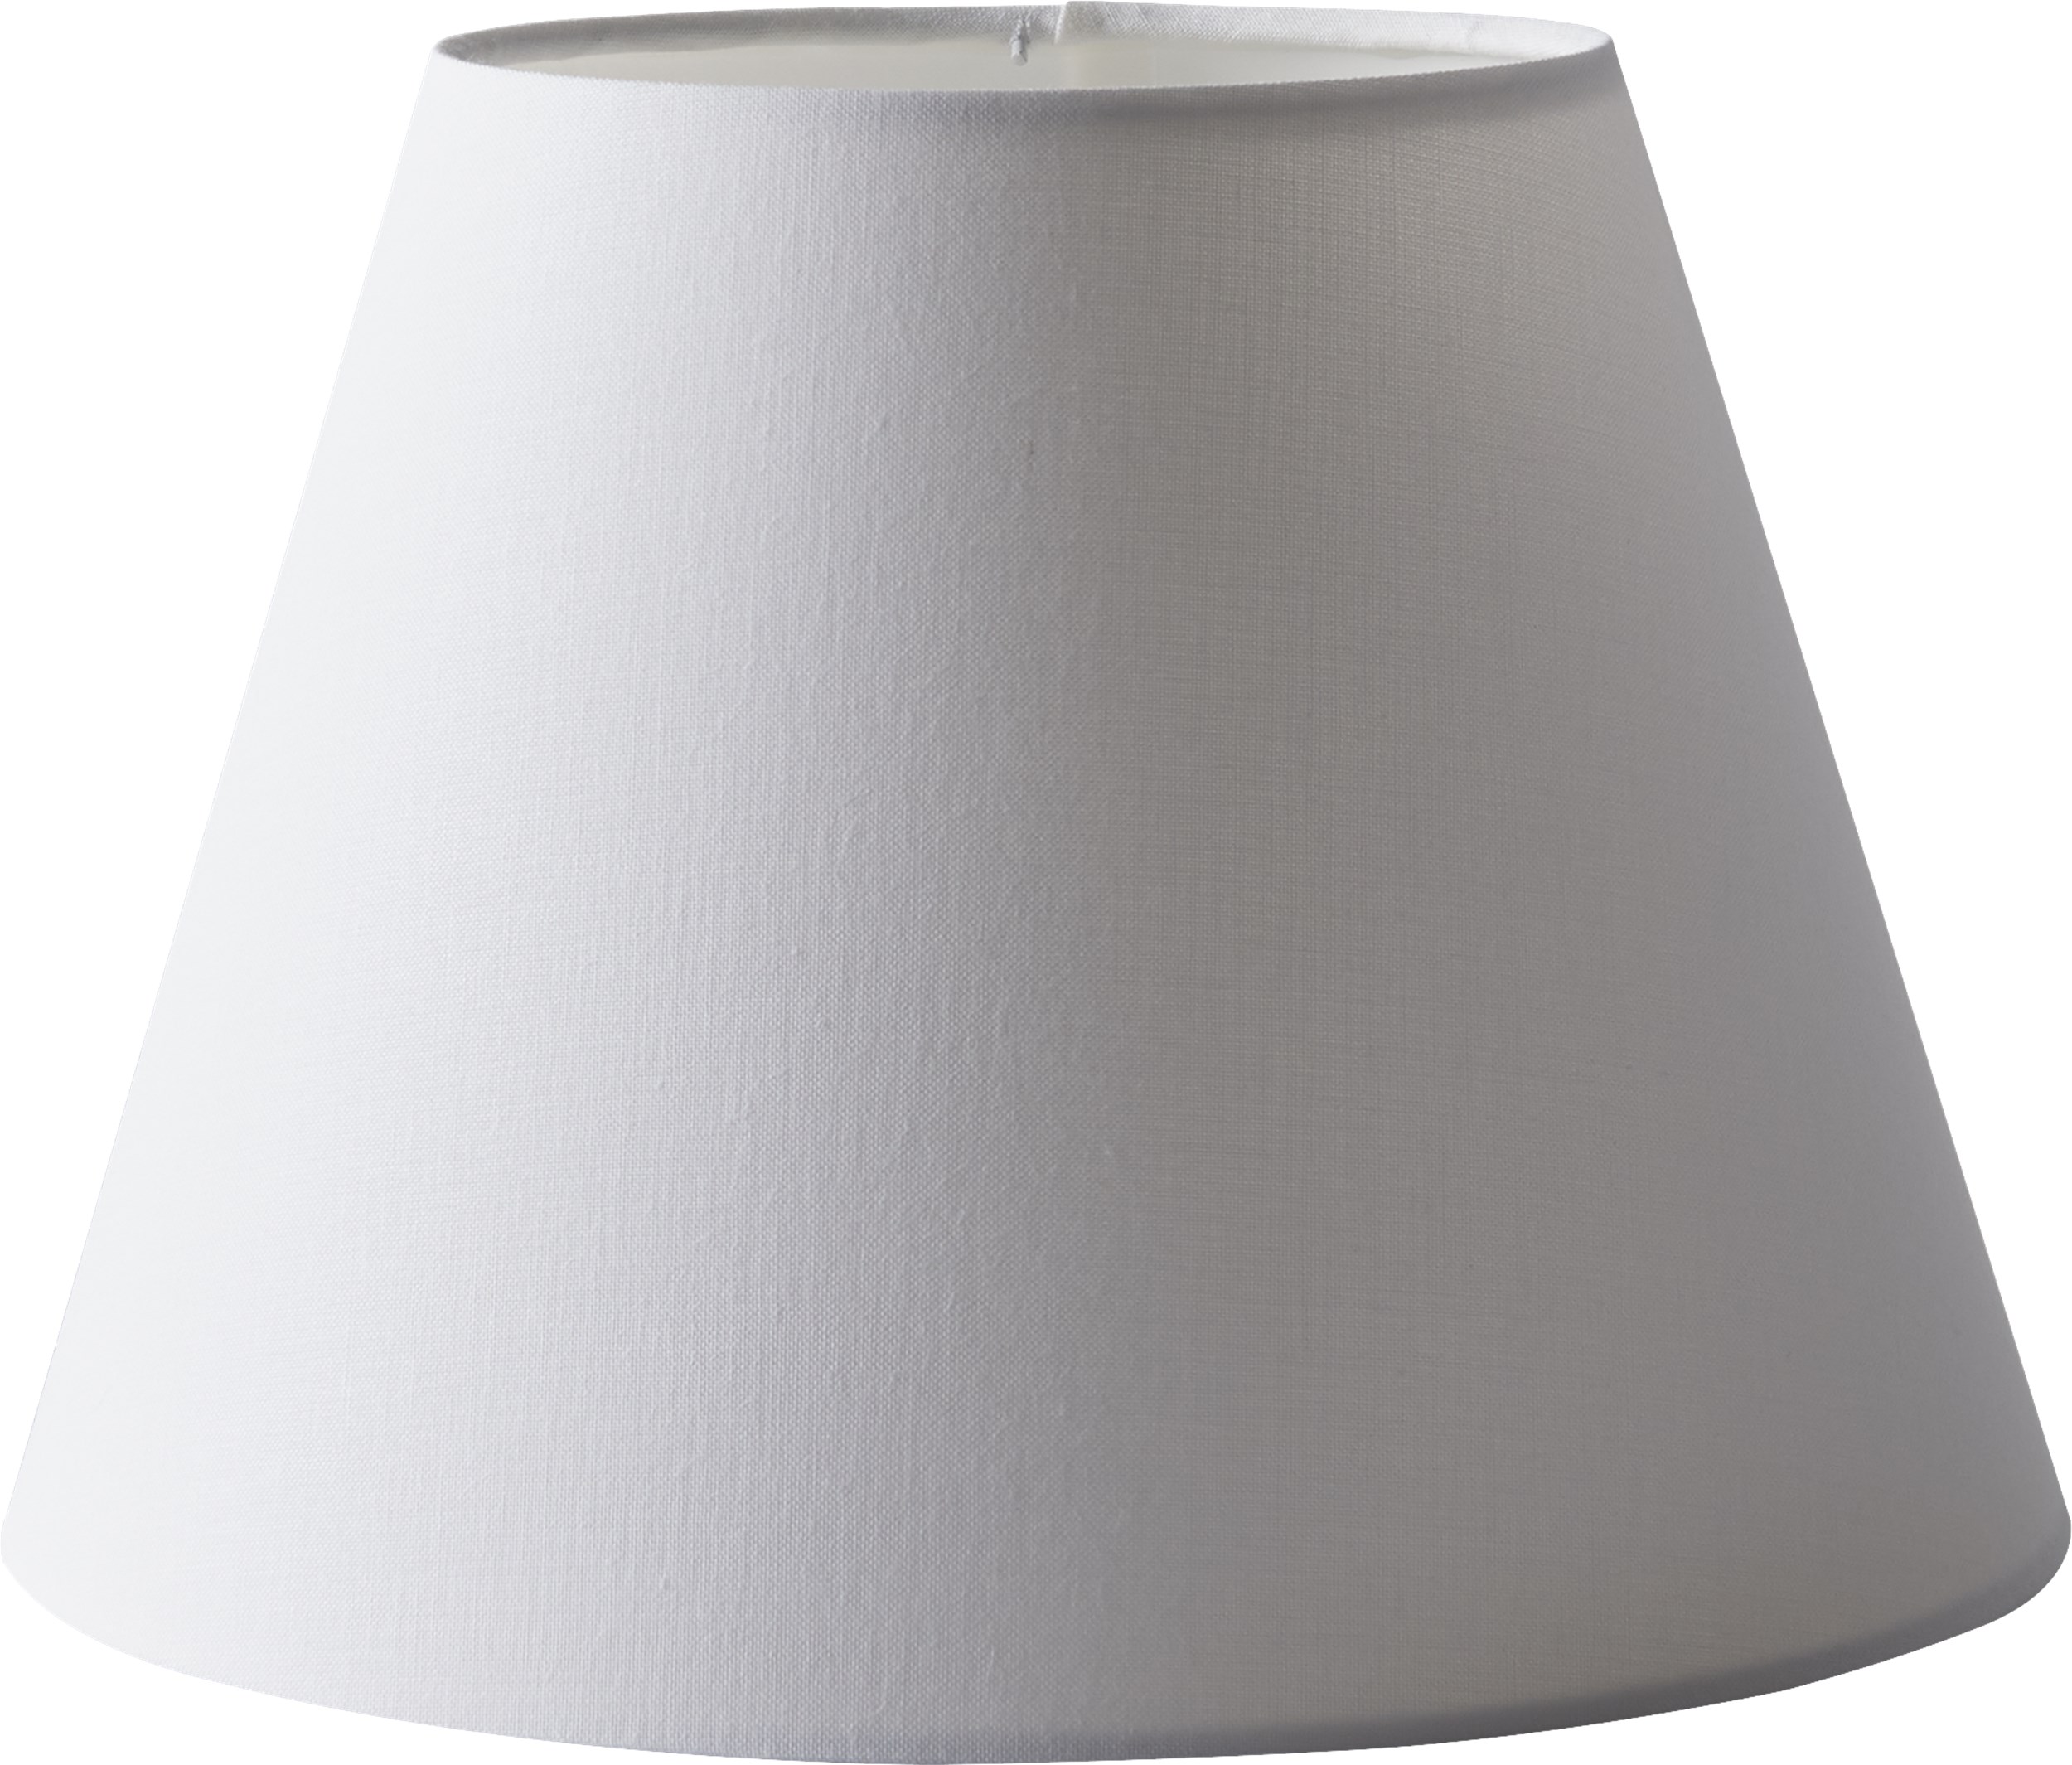 Inca Lampeskærm 20 x 25 cm - Hvid stofskærm og inderskærm i hvid folie